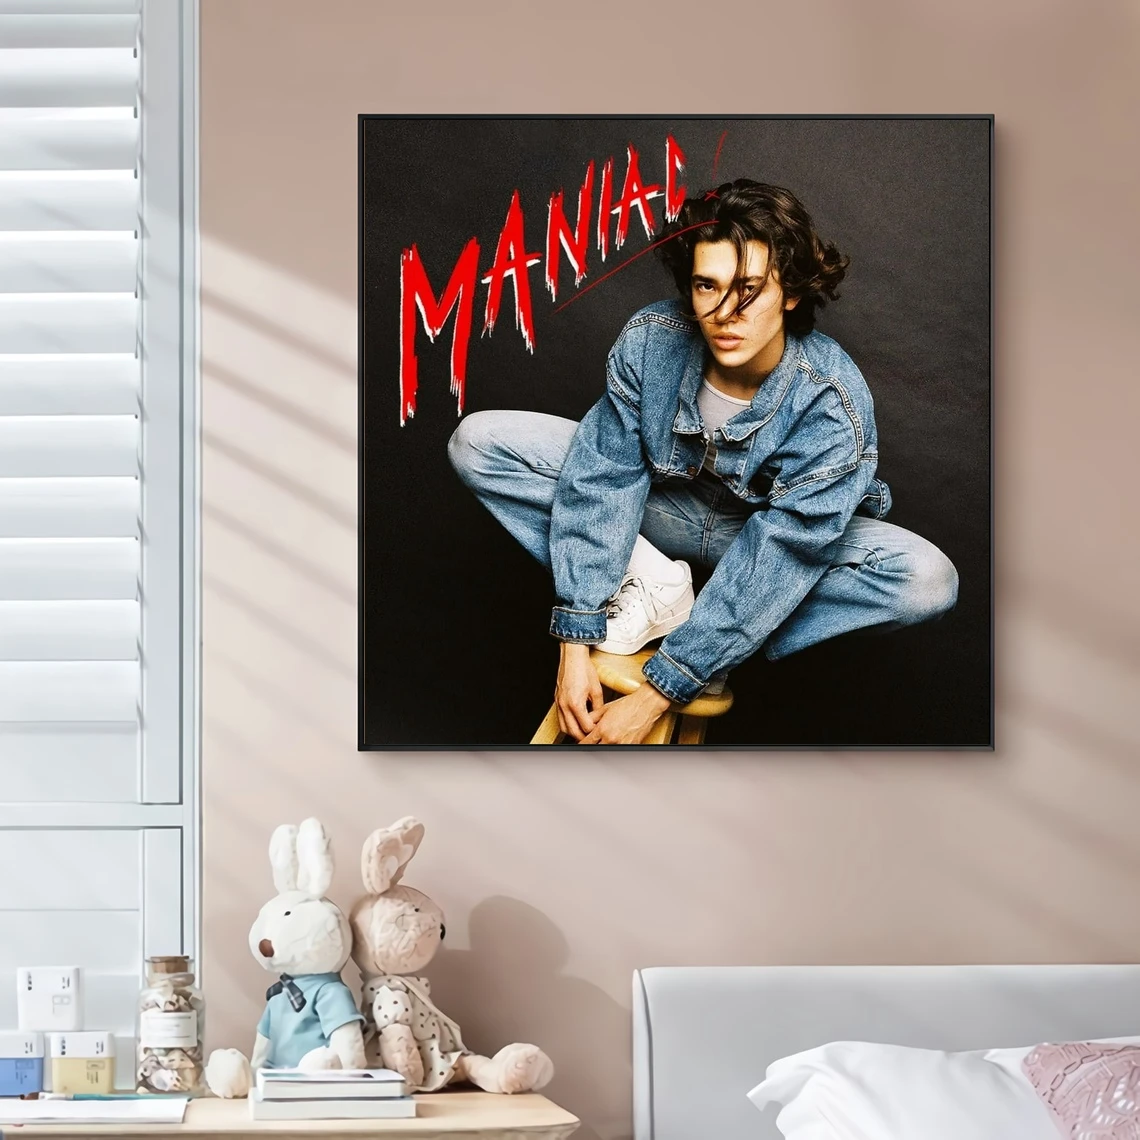 

Conan серая-маниак музыкальный альбом Обложка Холст плакат Рэп звезда поп-рок певица настенная живопись художественное украшение (без рамки)